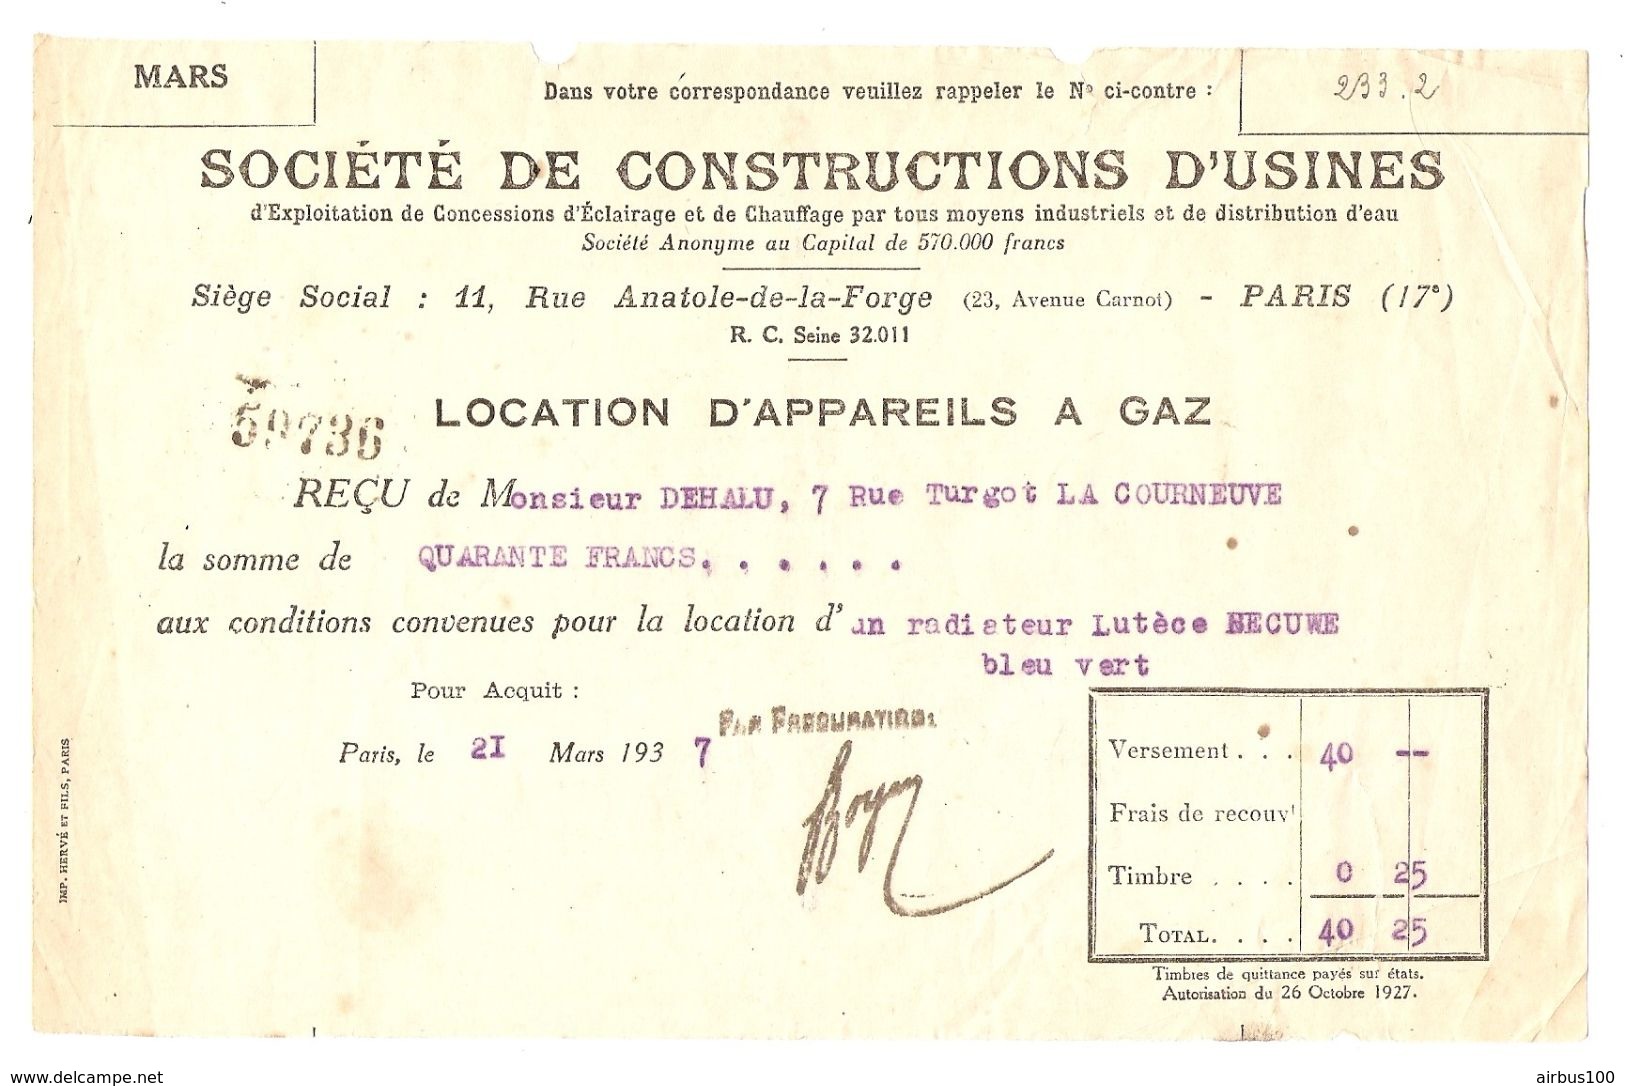 RECU 21 MARS 1937 - Sté De CONSTRUCTIONS D'USINES LOCATION D'APPAREILS à GAZ - RUE ANATOLE De La FORGE PARIS 17 èmè - Electricity & Gas